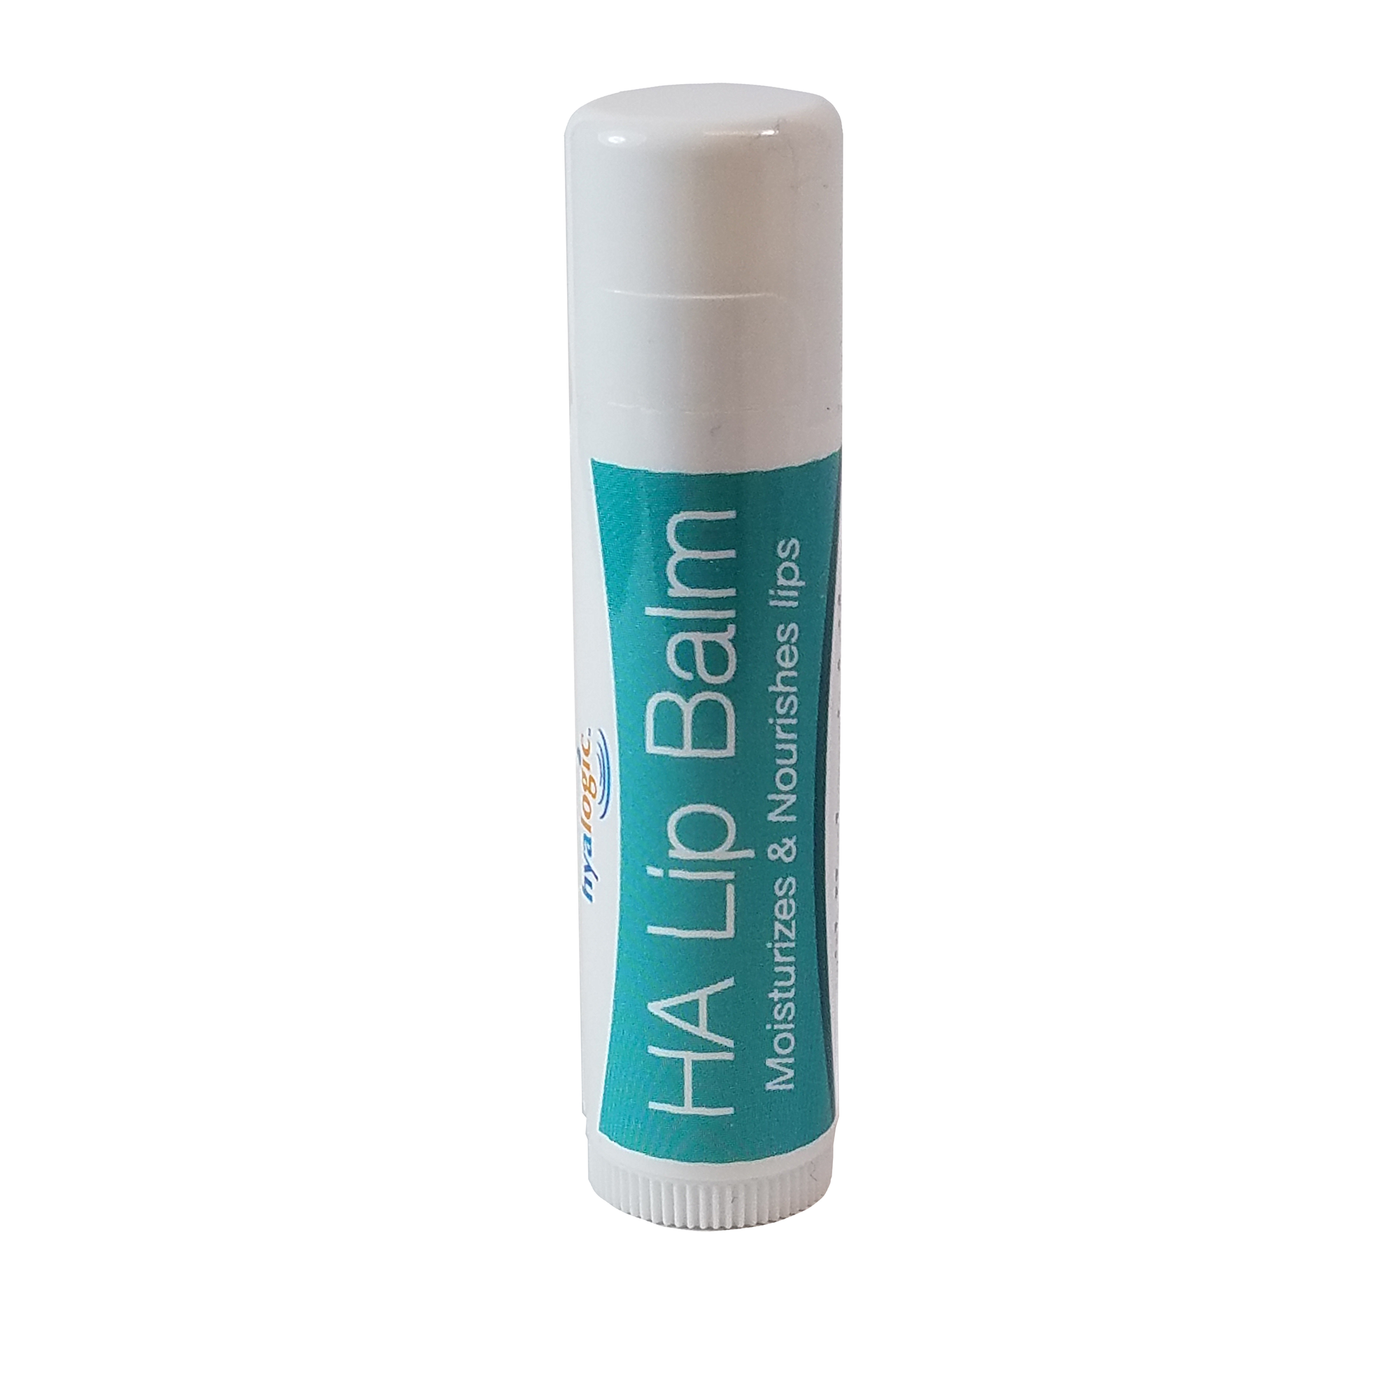 HA Lip Balm Tube - Certif Organic 1 tube Curated Wellness